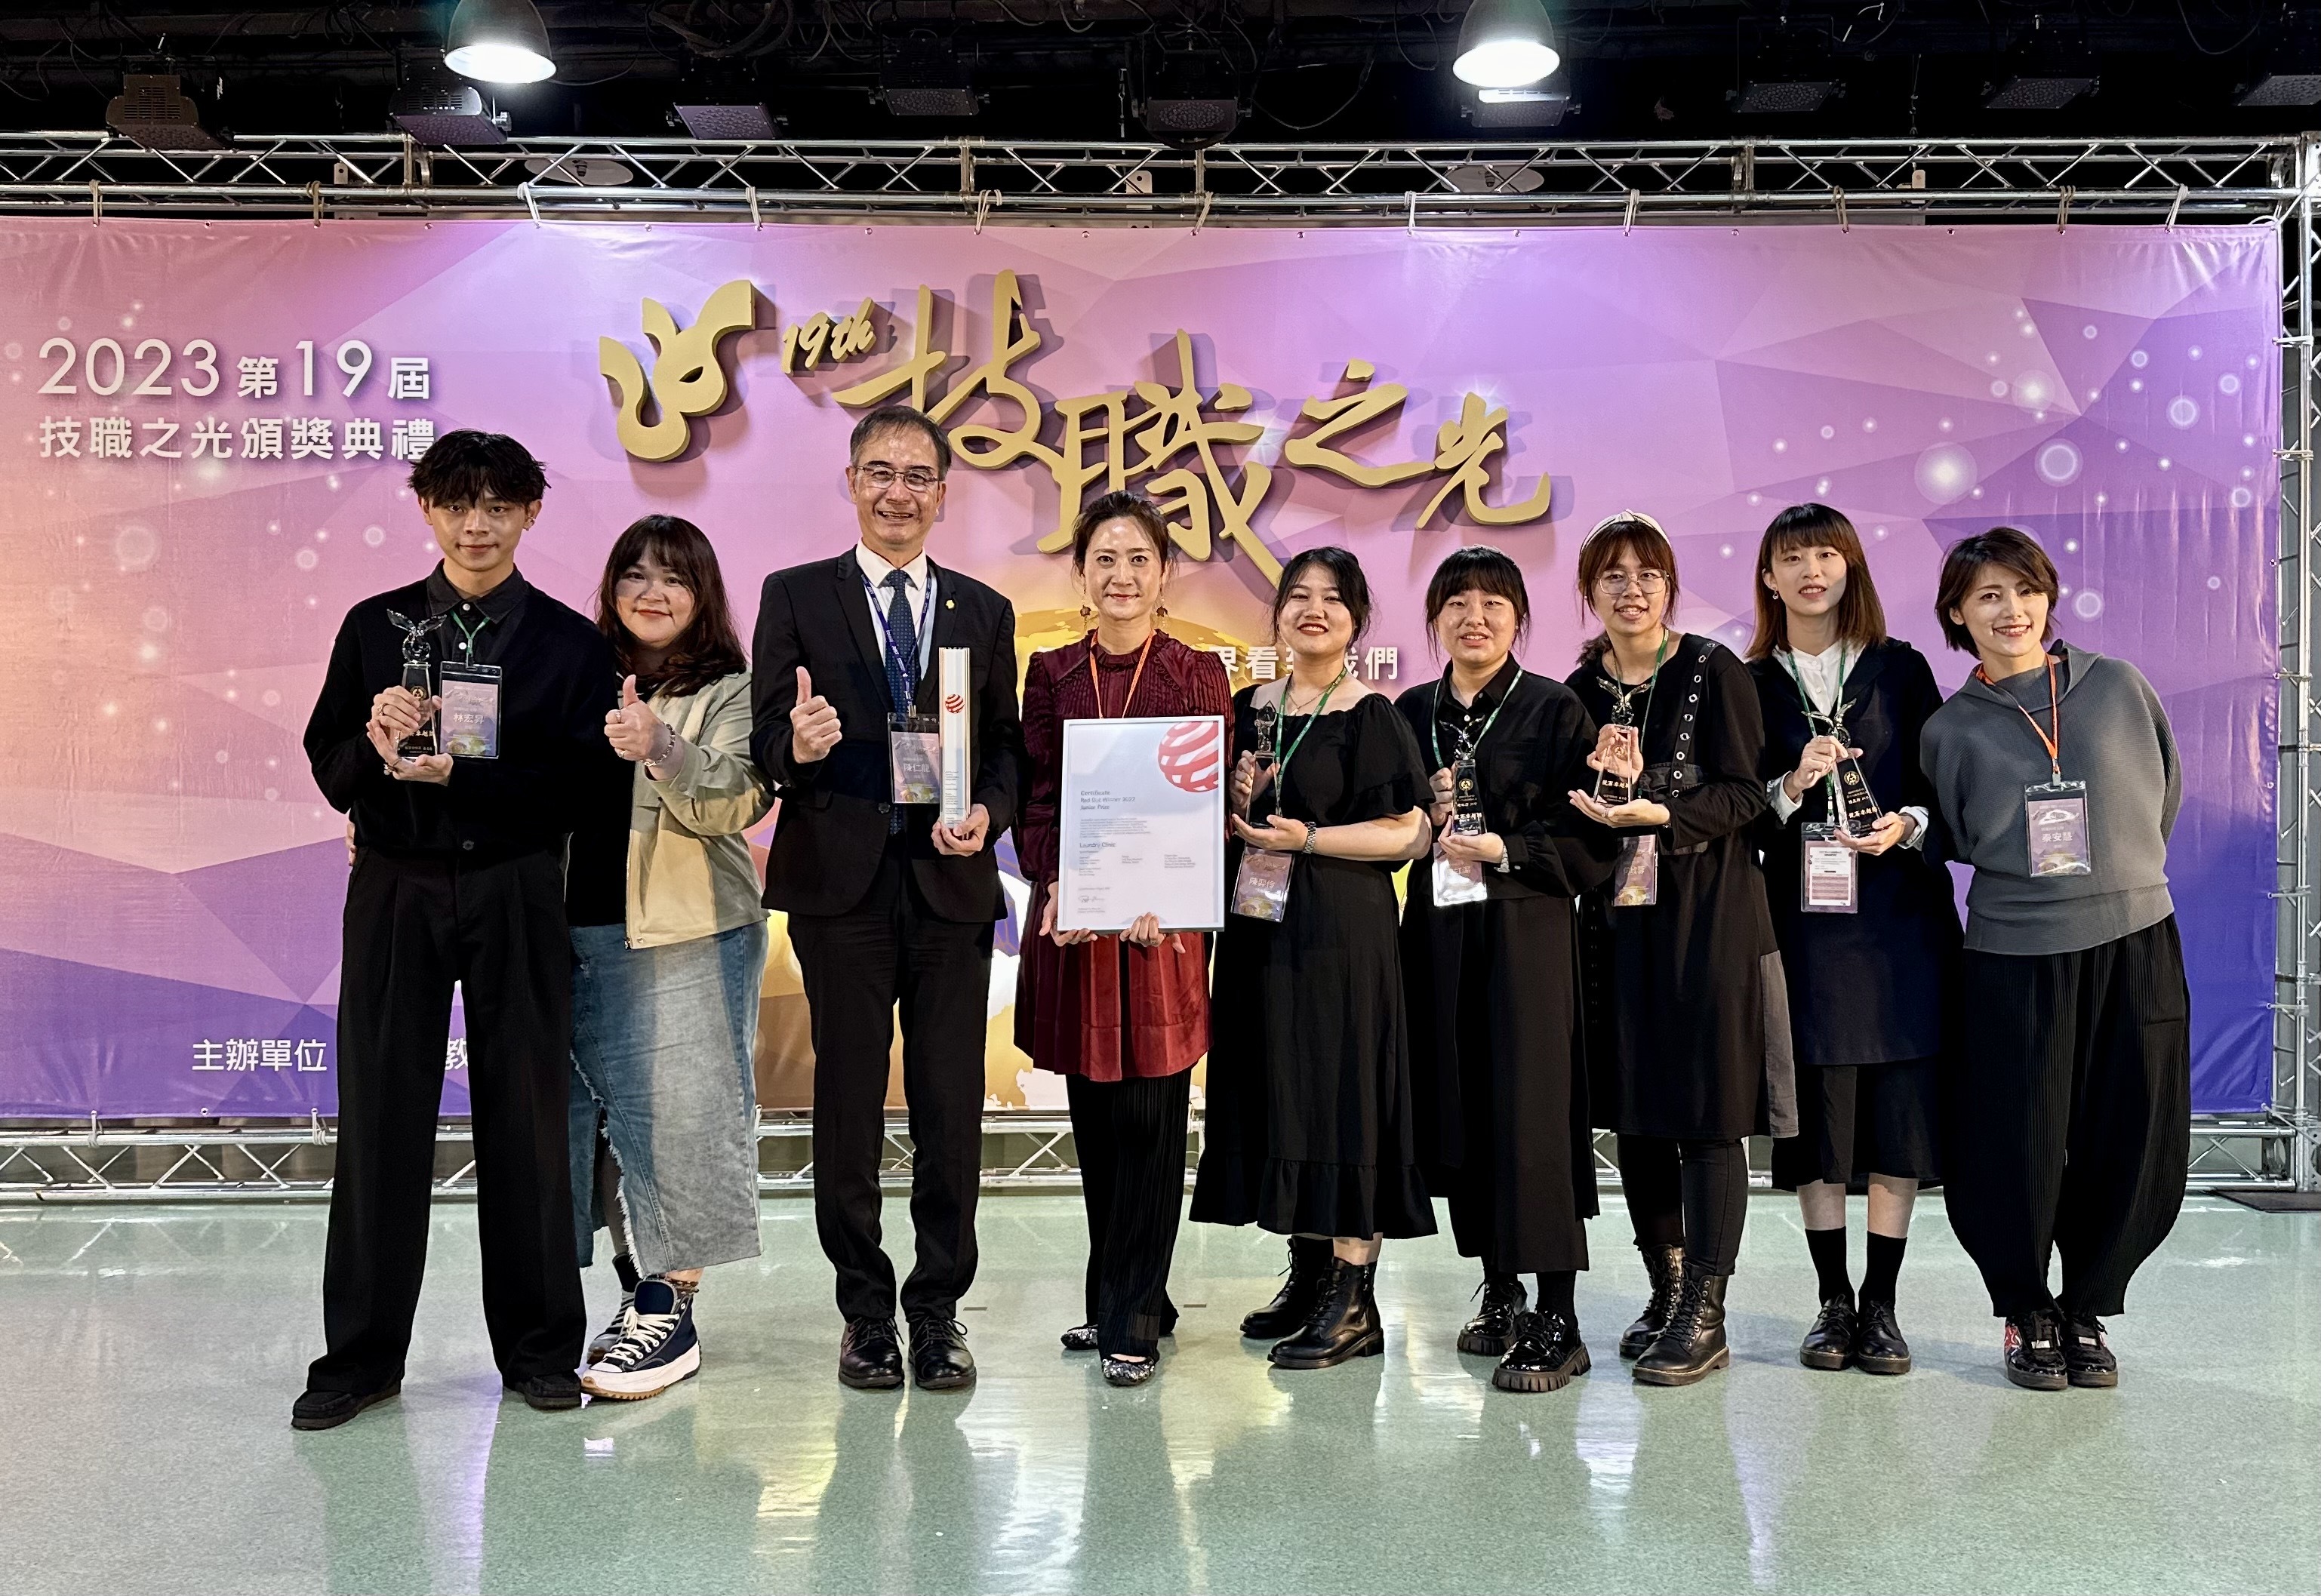 嶺東科技大學連續四年蟬聯「競賽卓越獎」並獲頒技職教育界最高榮譽。